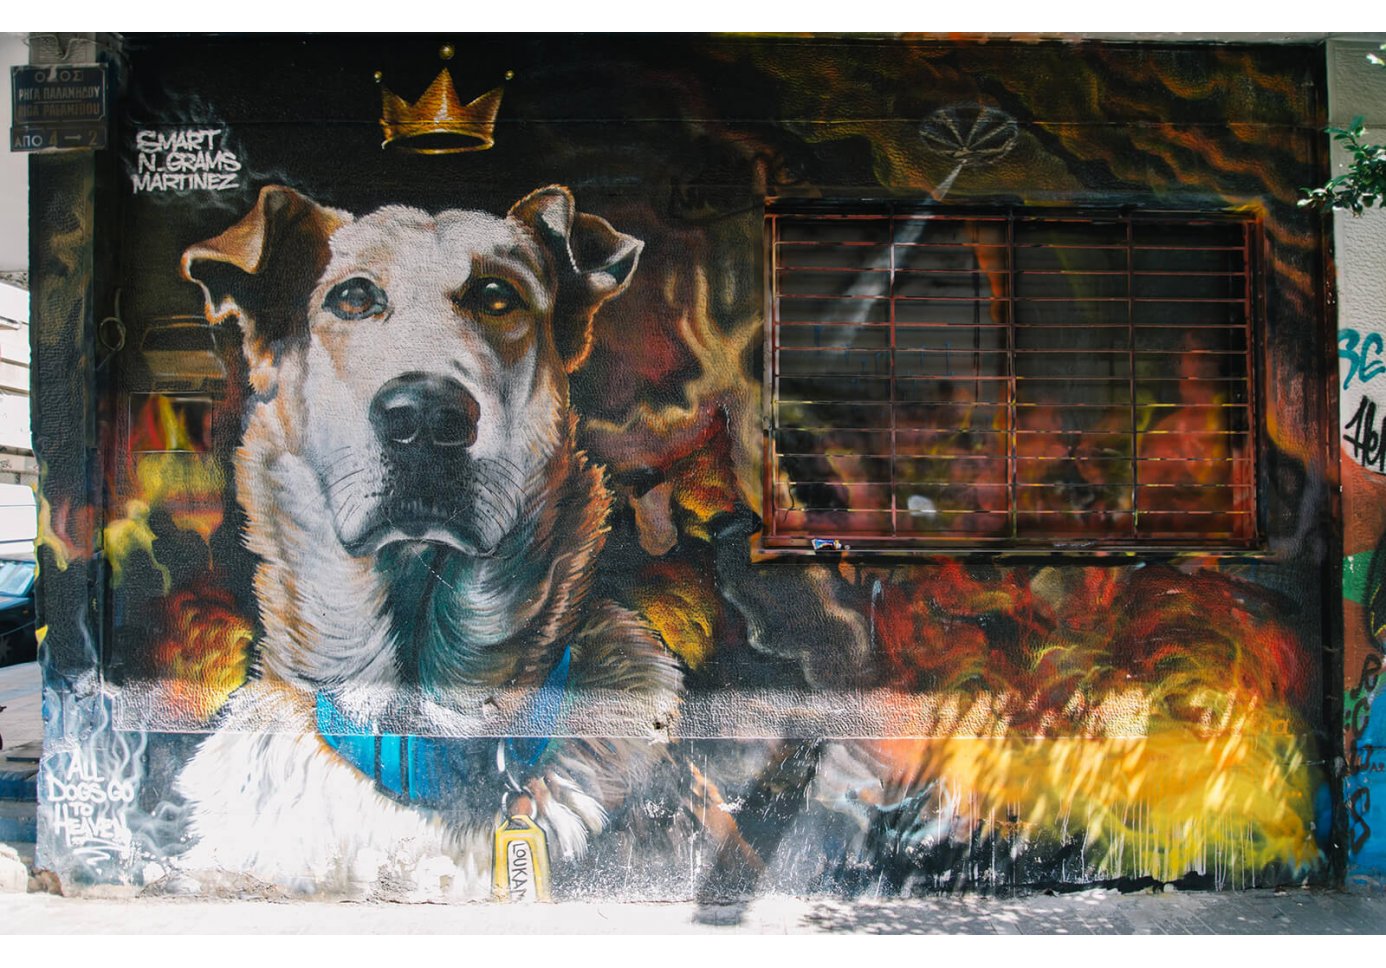 Graffiti of a dog 